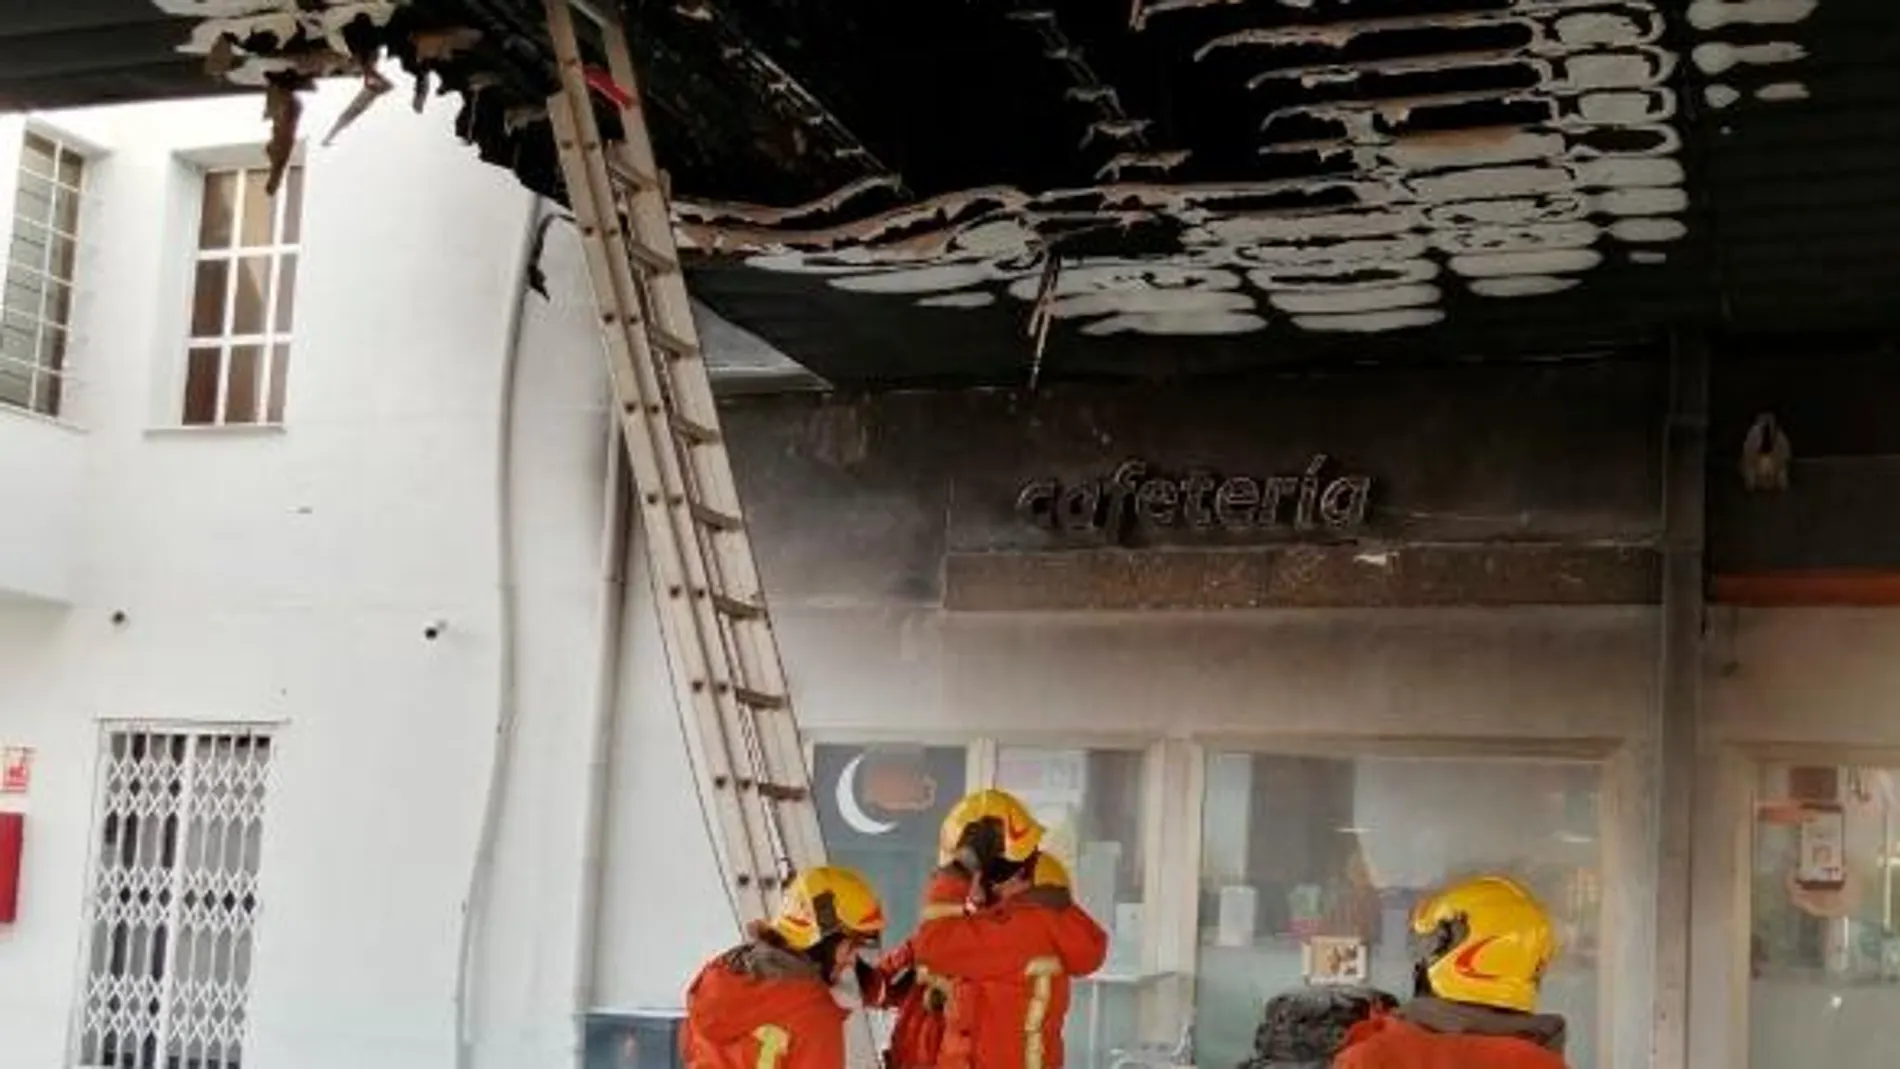 Un quemado grave al incendiarse unos bidones en una gasolinera de Quart